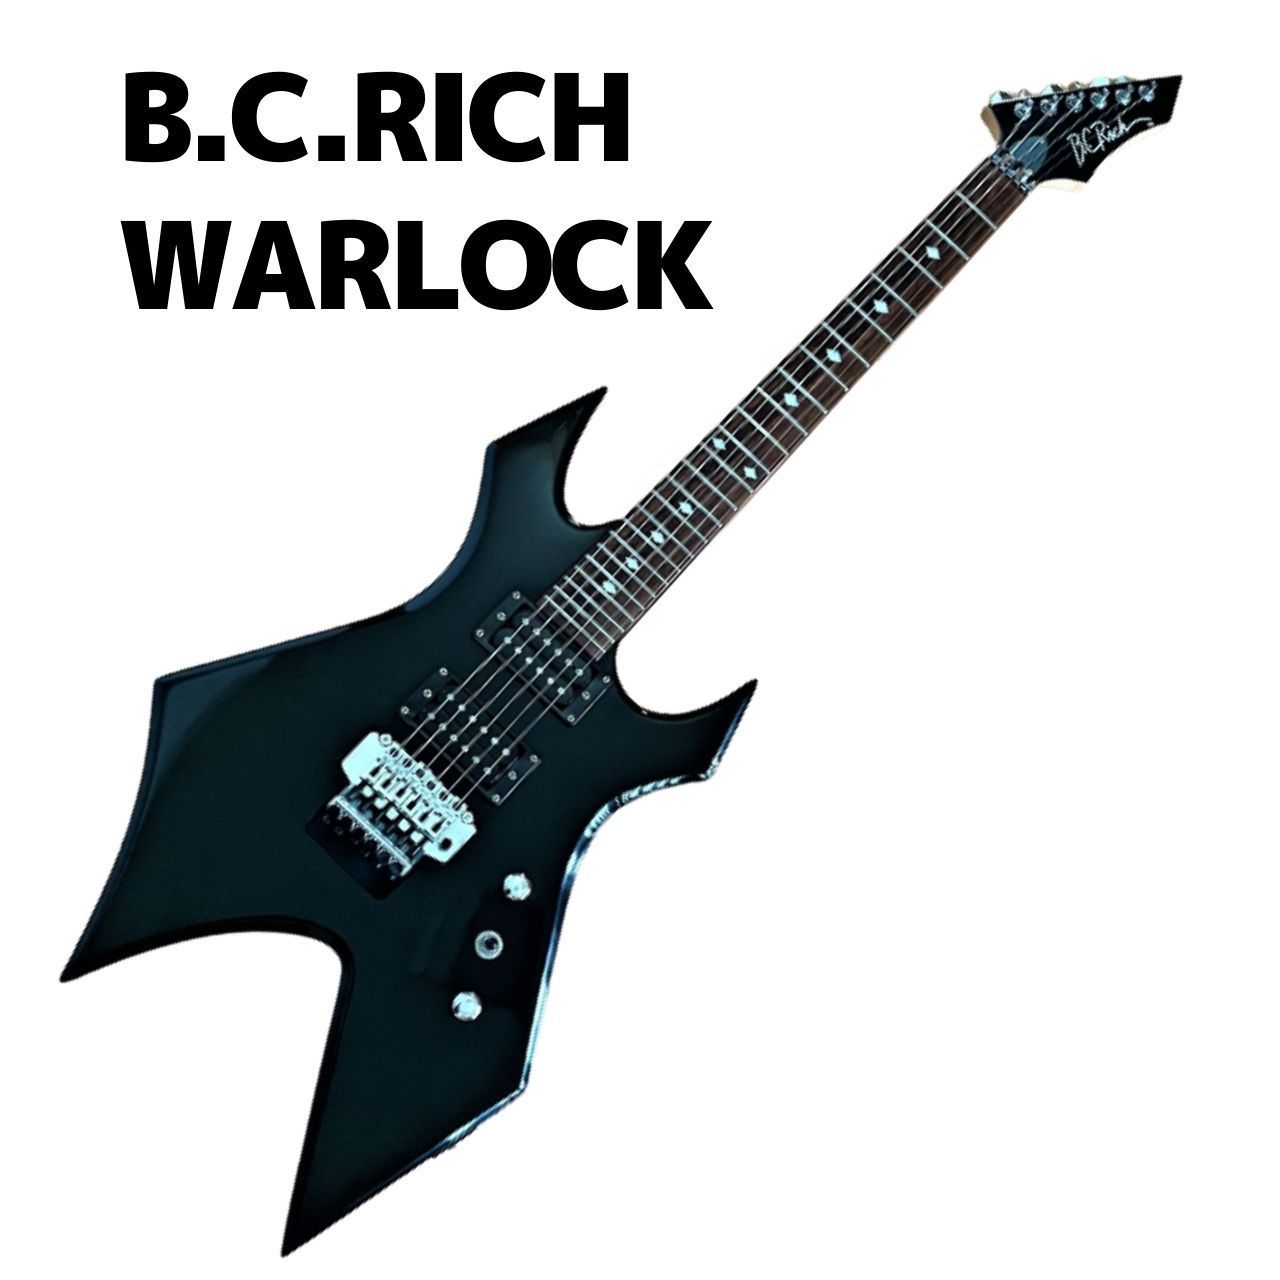 B.C.RICH WARLOCK ワーロック - メルカリ